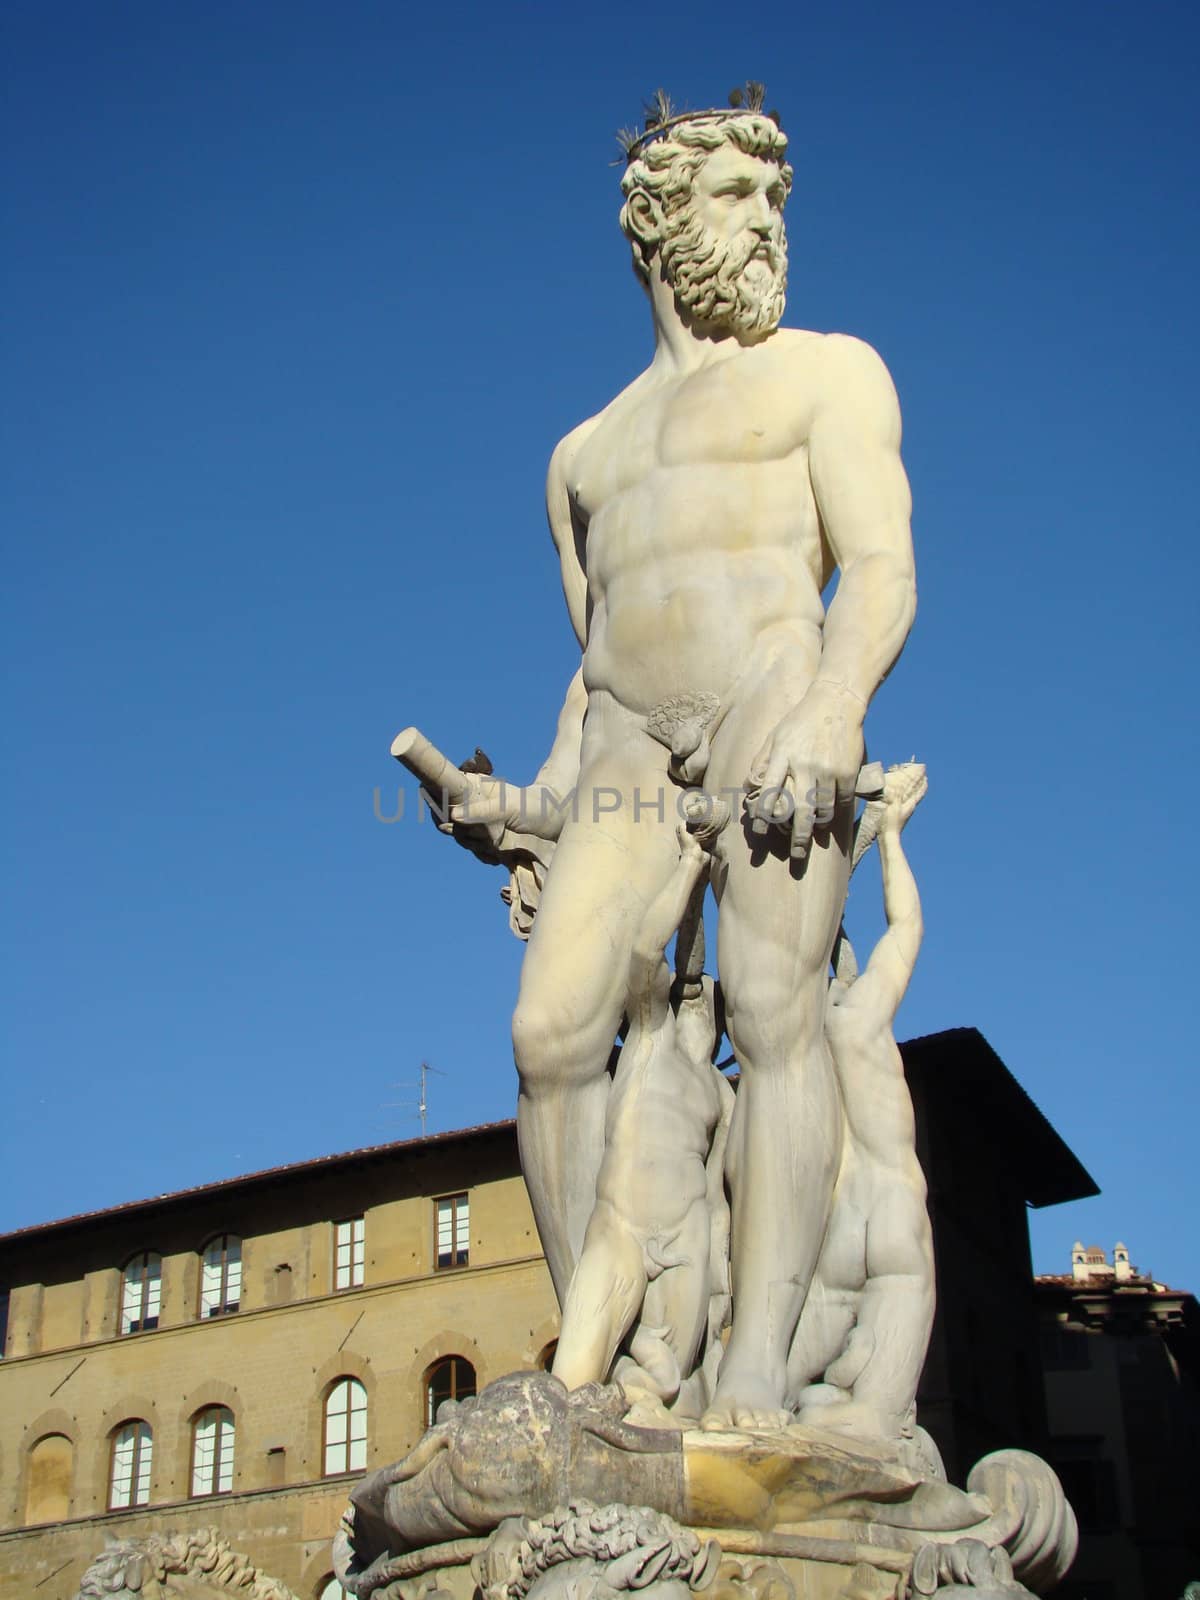 The Fountain of Neptune in Florencesituated on the Piazza della Signoria (Signoria square) in front of the Palazzo Vecchio. Work by Bartolomeo Ammannati and Giambologna TuscanyItaly. 2008